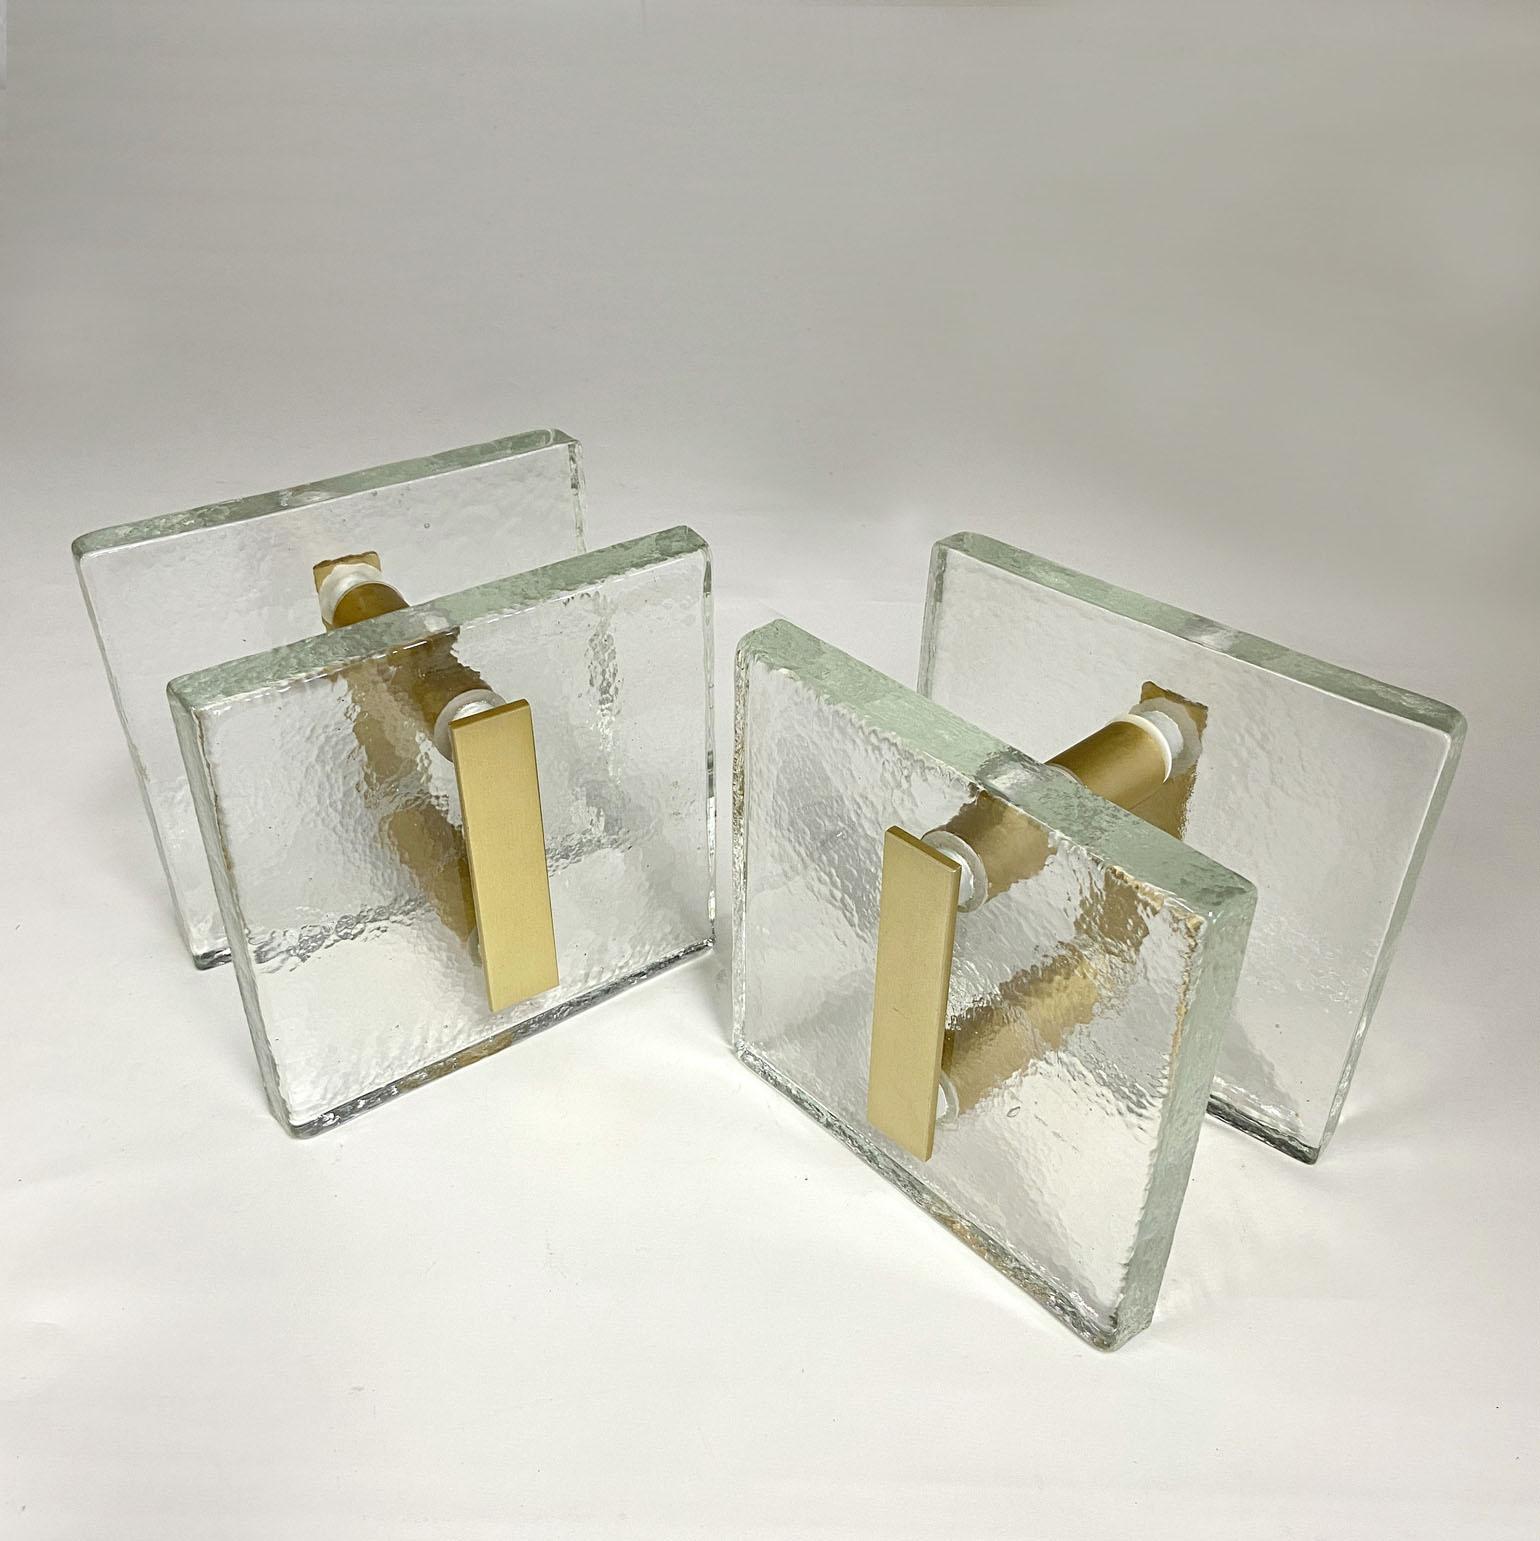 Ein Paar Doppeltürgriffe, drückend und ziehend, quadratisches strukturiertes klares Gussglas mit mattgold eloxiertem Aluminium. Sie sind für Glas- oder Holztüren konzipiert, eignen sich aber für alle Arten von Türen. Die Glasplatten werden gegossen,